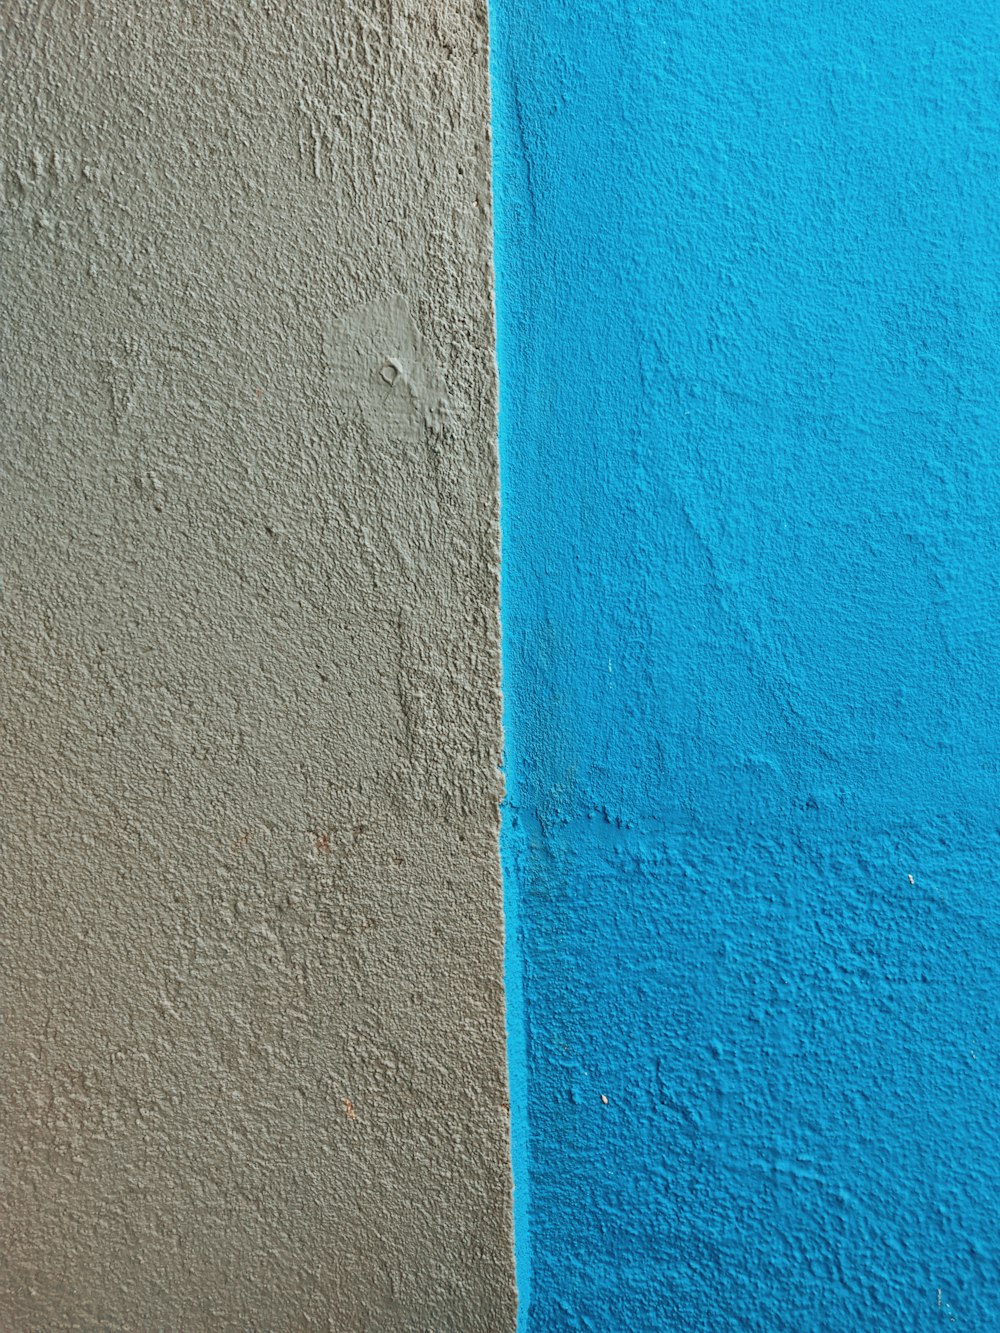 parete dipinta di blu e arancione